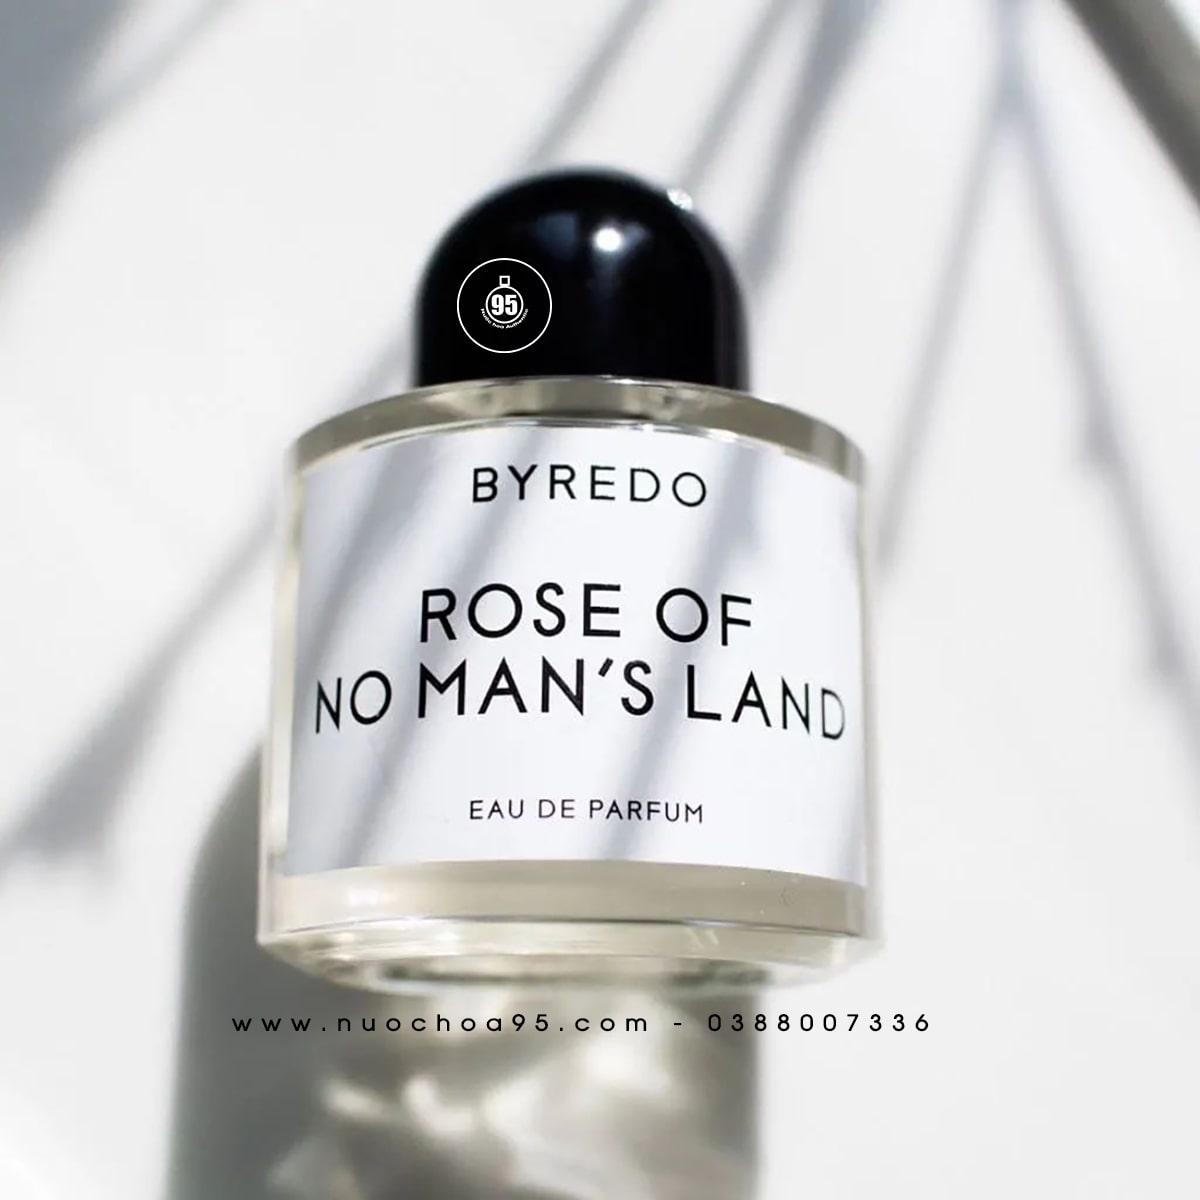 Nước hoa Byredo Rose Of No Man’s Land - Ảnh 1